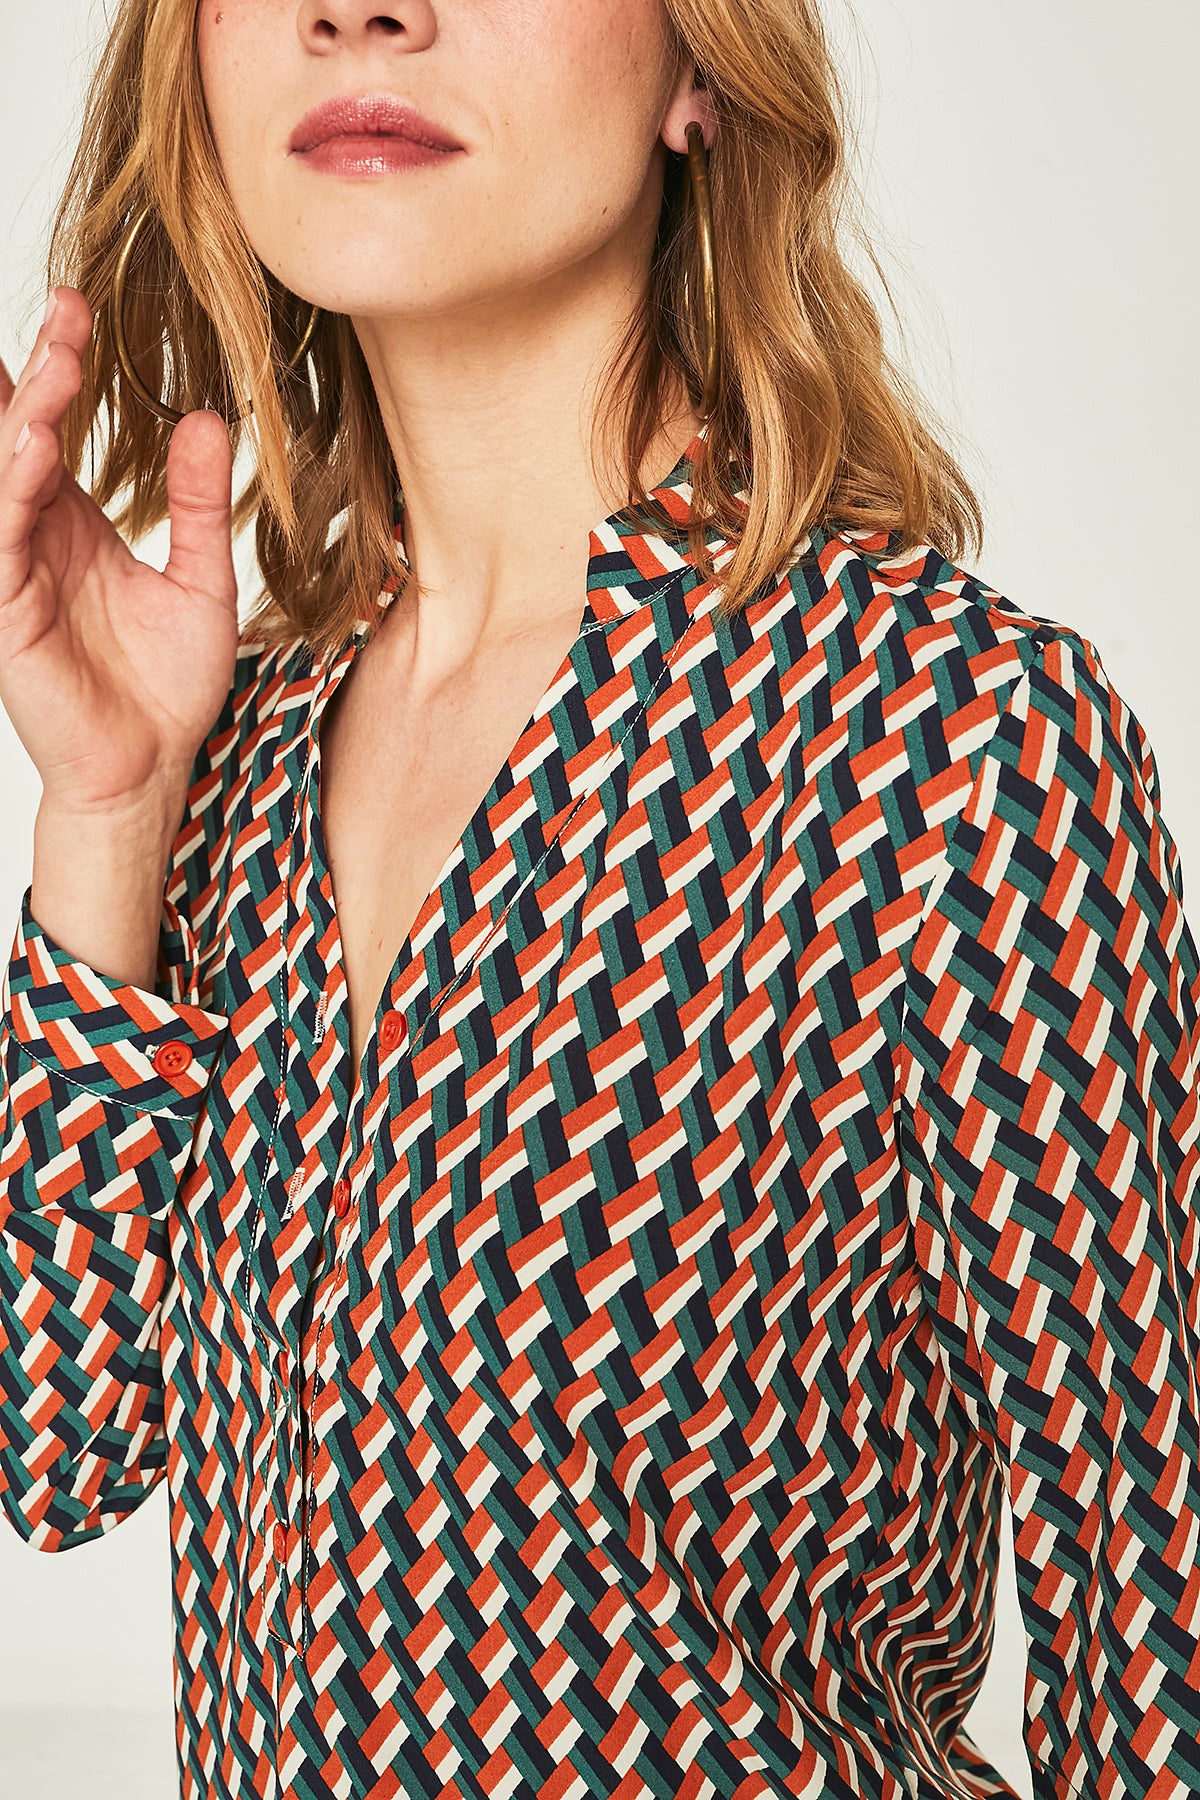 Geometric sage shirt – lawebdesmile